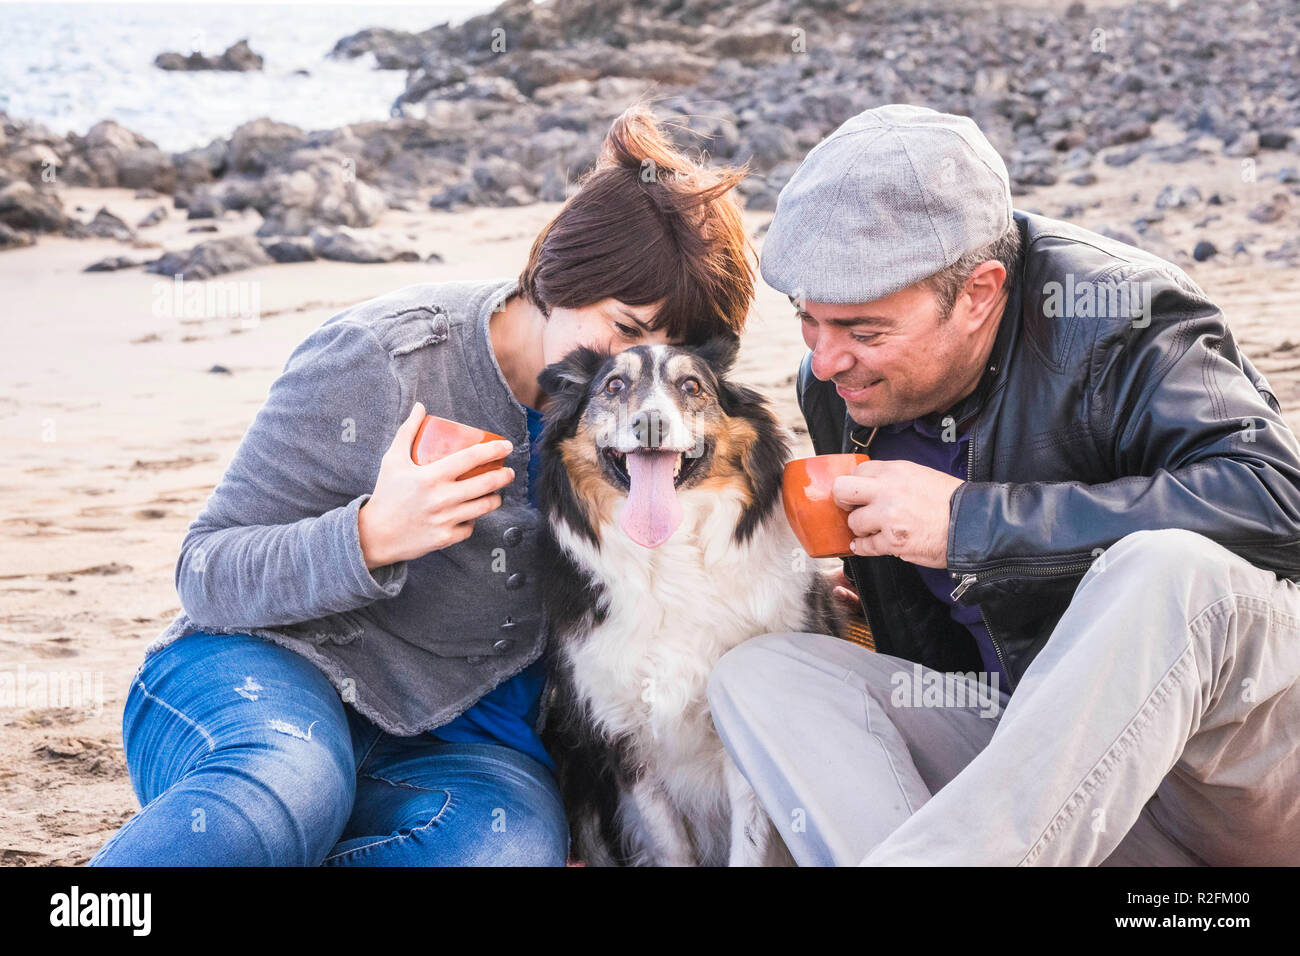 Familie mit einem Border Collie Hund tun Pic Nic Aktivität am Strand in Ferien, Sommer Lifestyle mit Freunden Konzept. im alten Stil und vintage Filter. Kaffee Pause Zeit Stockfoto